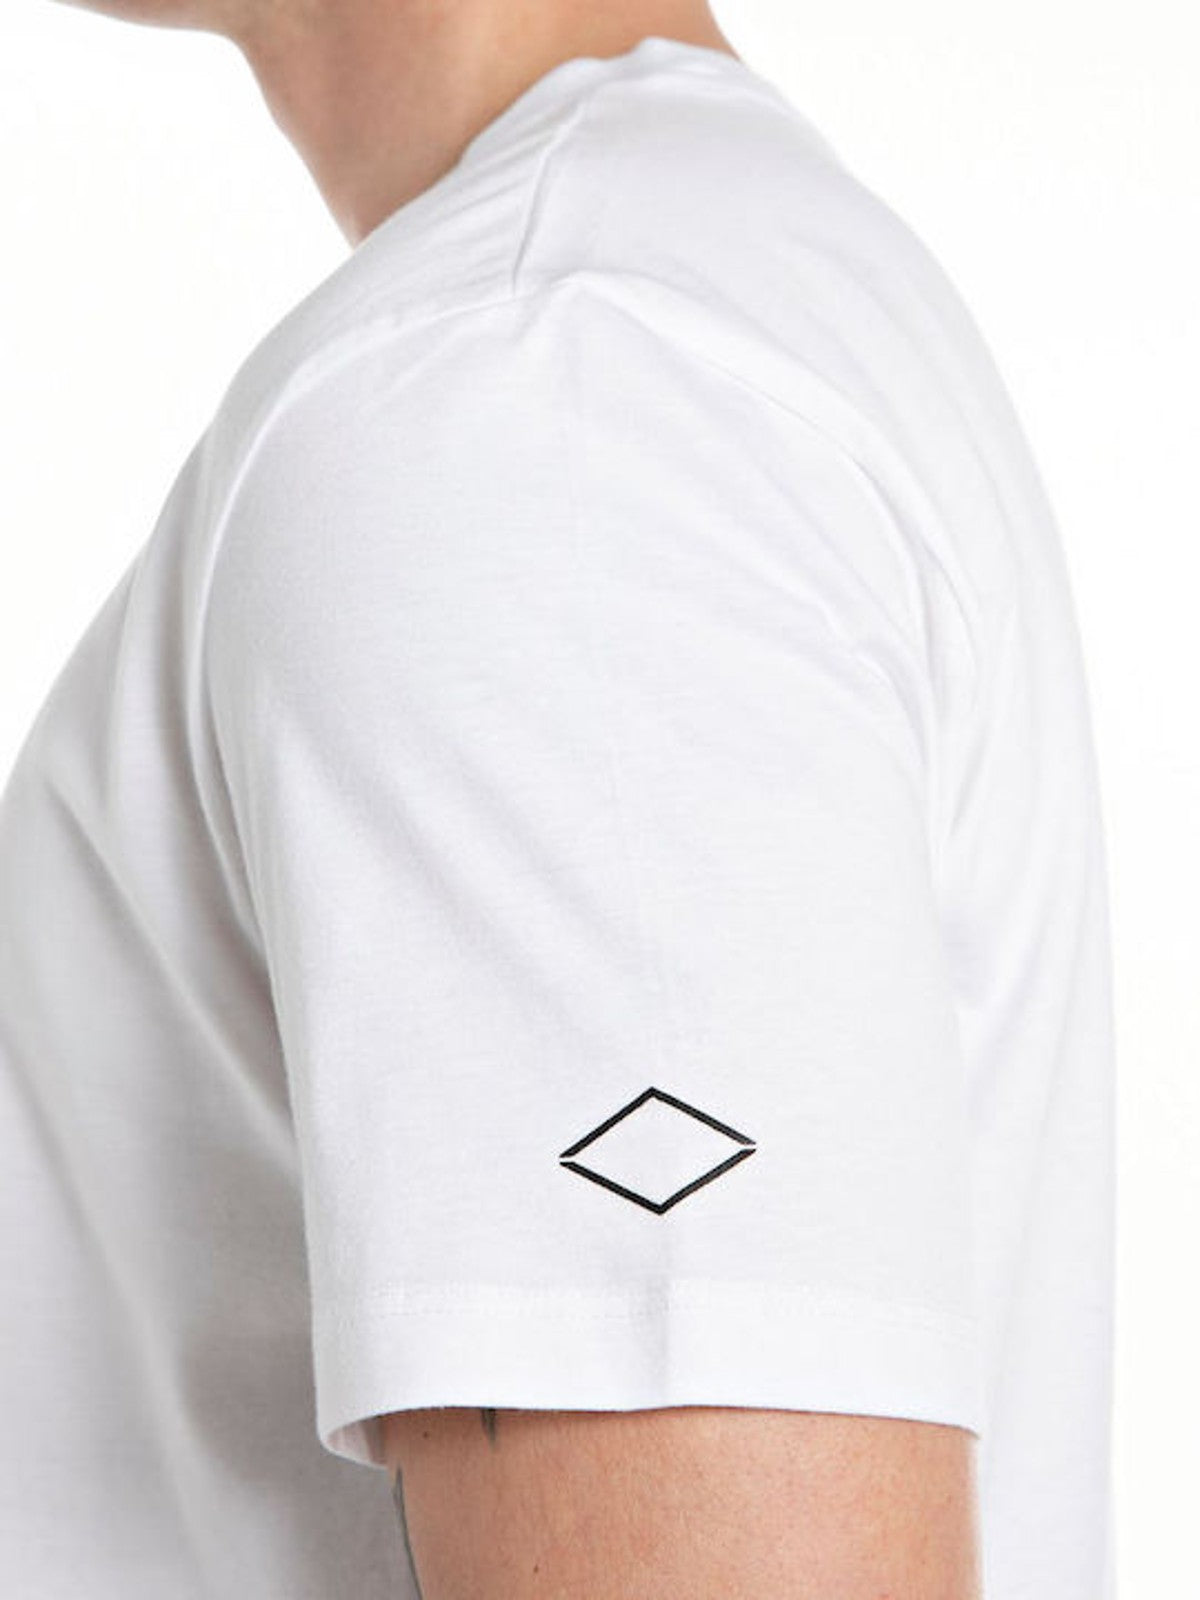 White Branded T-Shirt